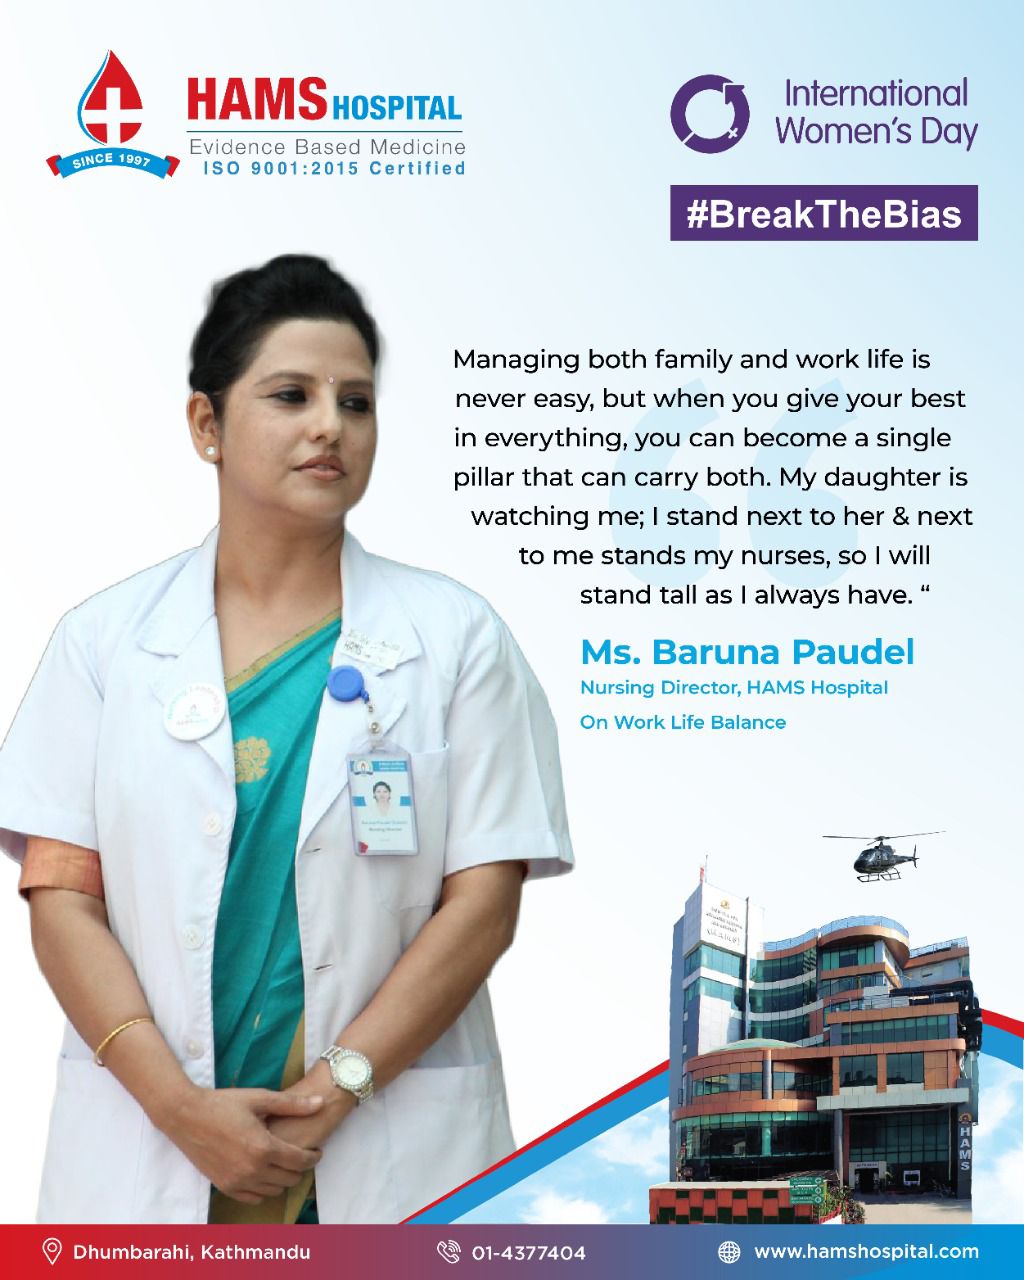 Ms. Baruna Paudel, Nursing Director